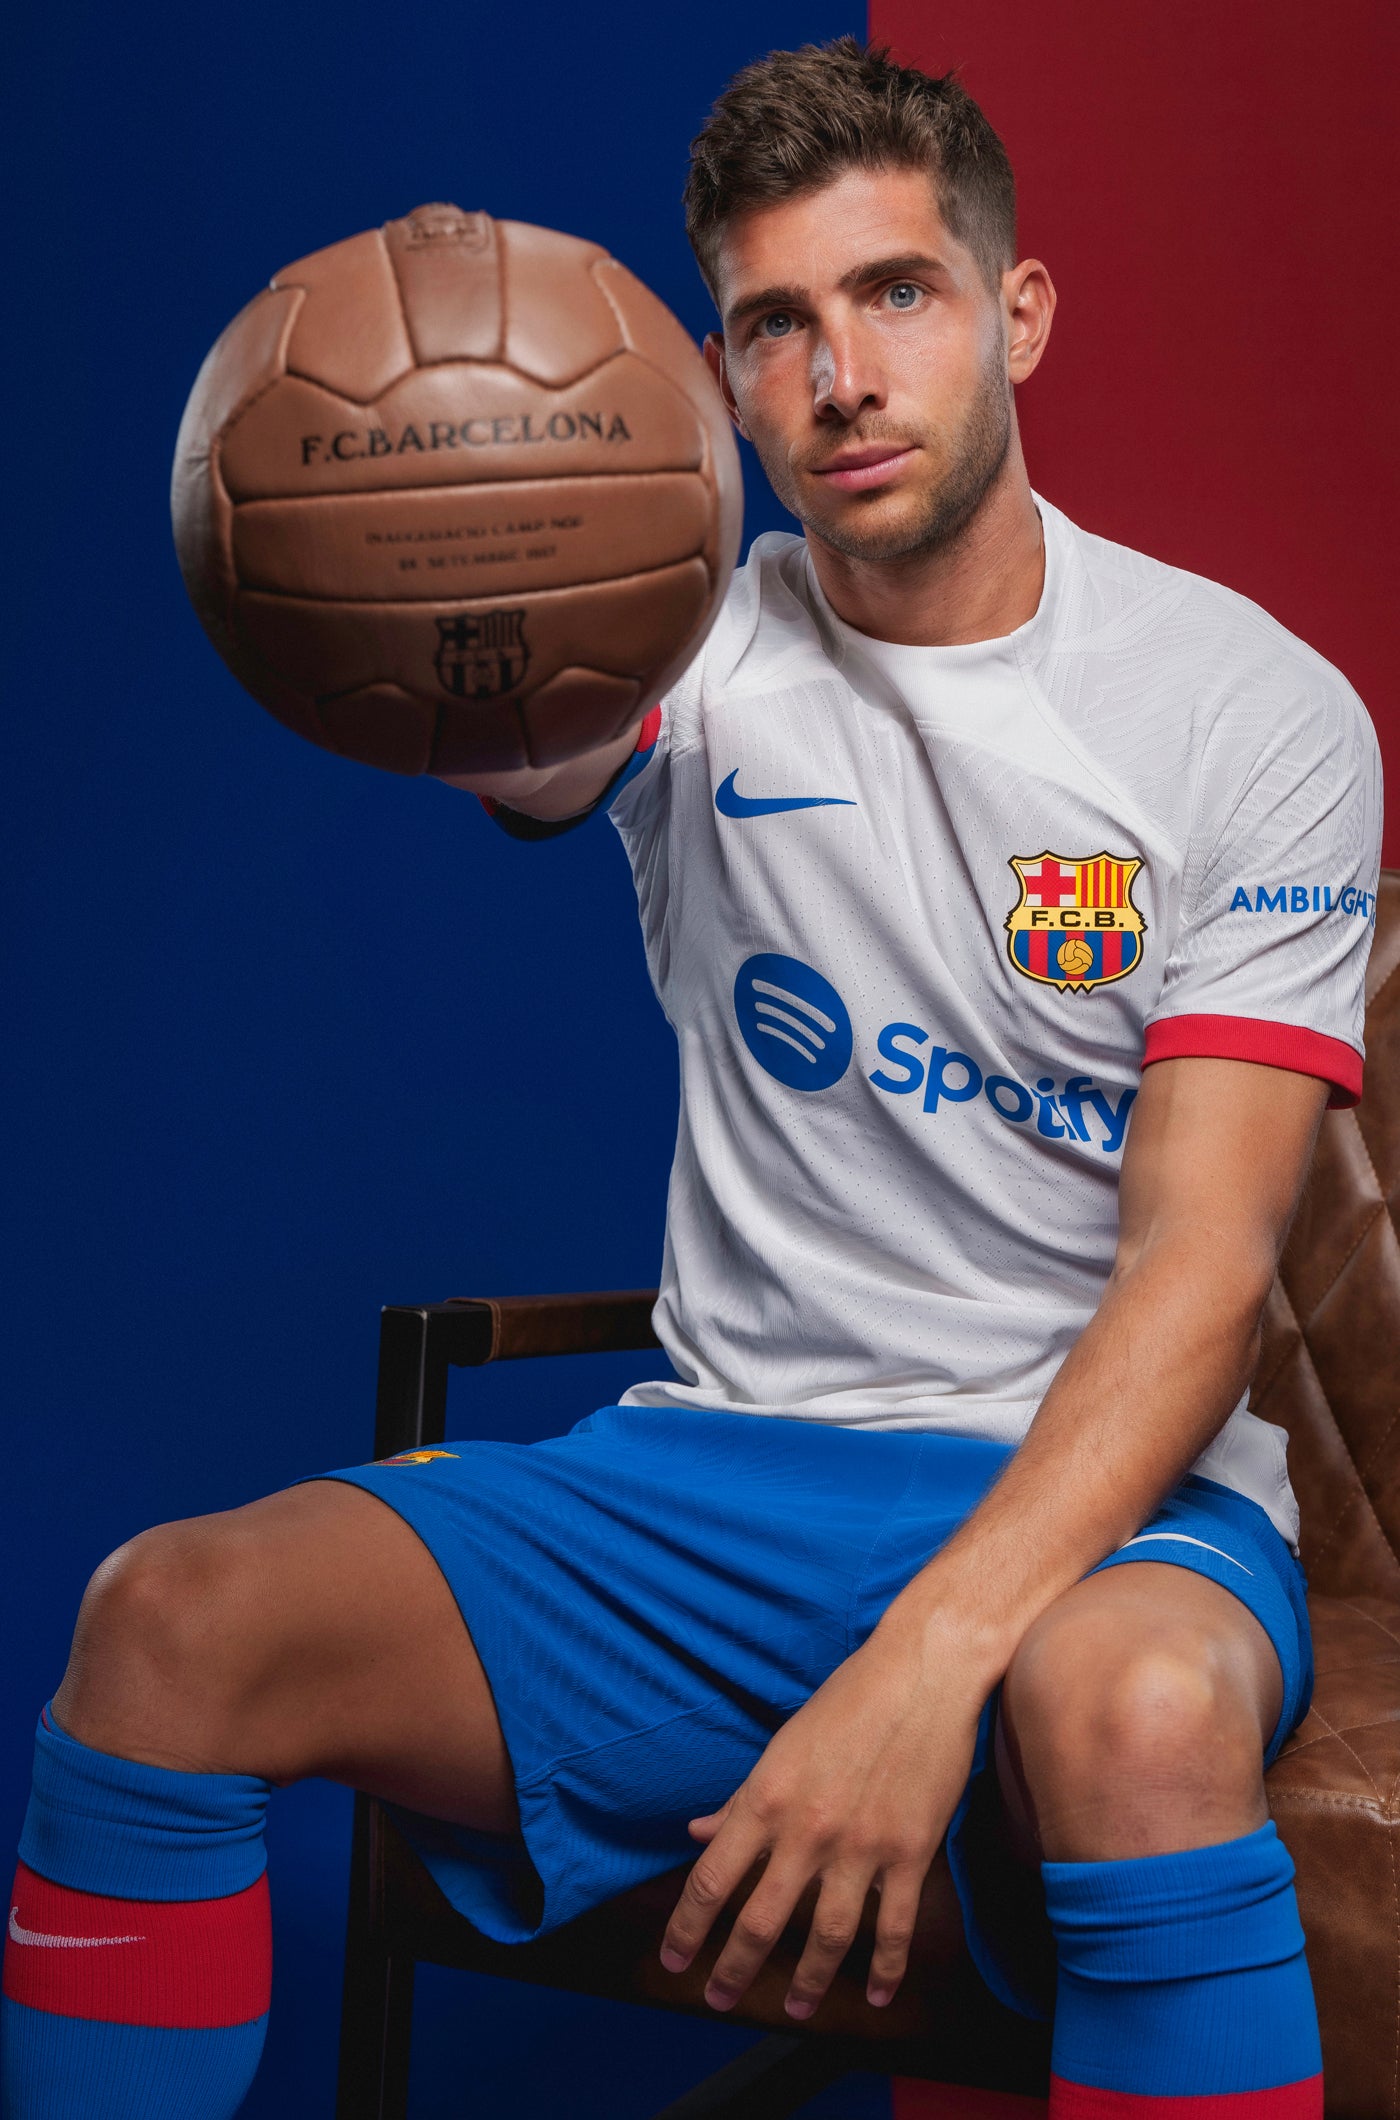 LFP FC Barcelona away shirt 23/24 Player’s Edition  - S. ROBERTO